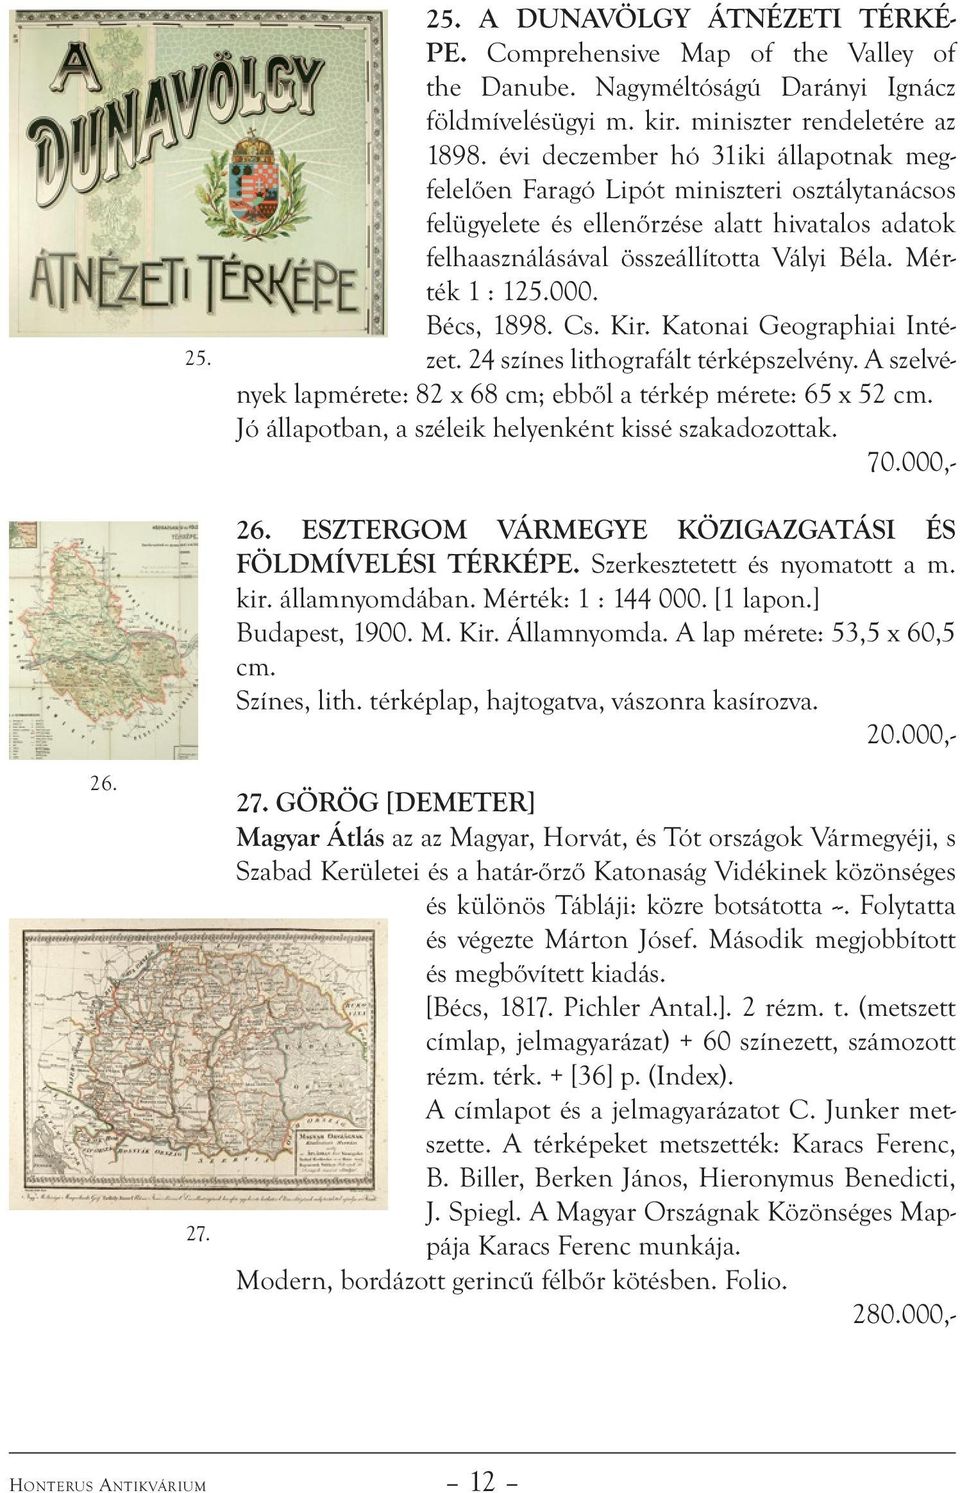 Bécs, 1898. Cs. Kir. Katonai Geographiai Intézet. 24 színes lithografált térképszelvény. A szelvények lapmérete: 82 x 68 cm; ebből a térkép mérete: 65 x 52 cm.